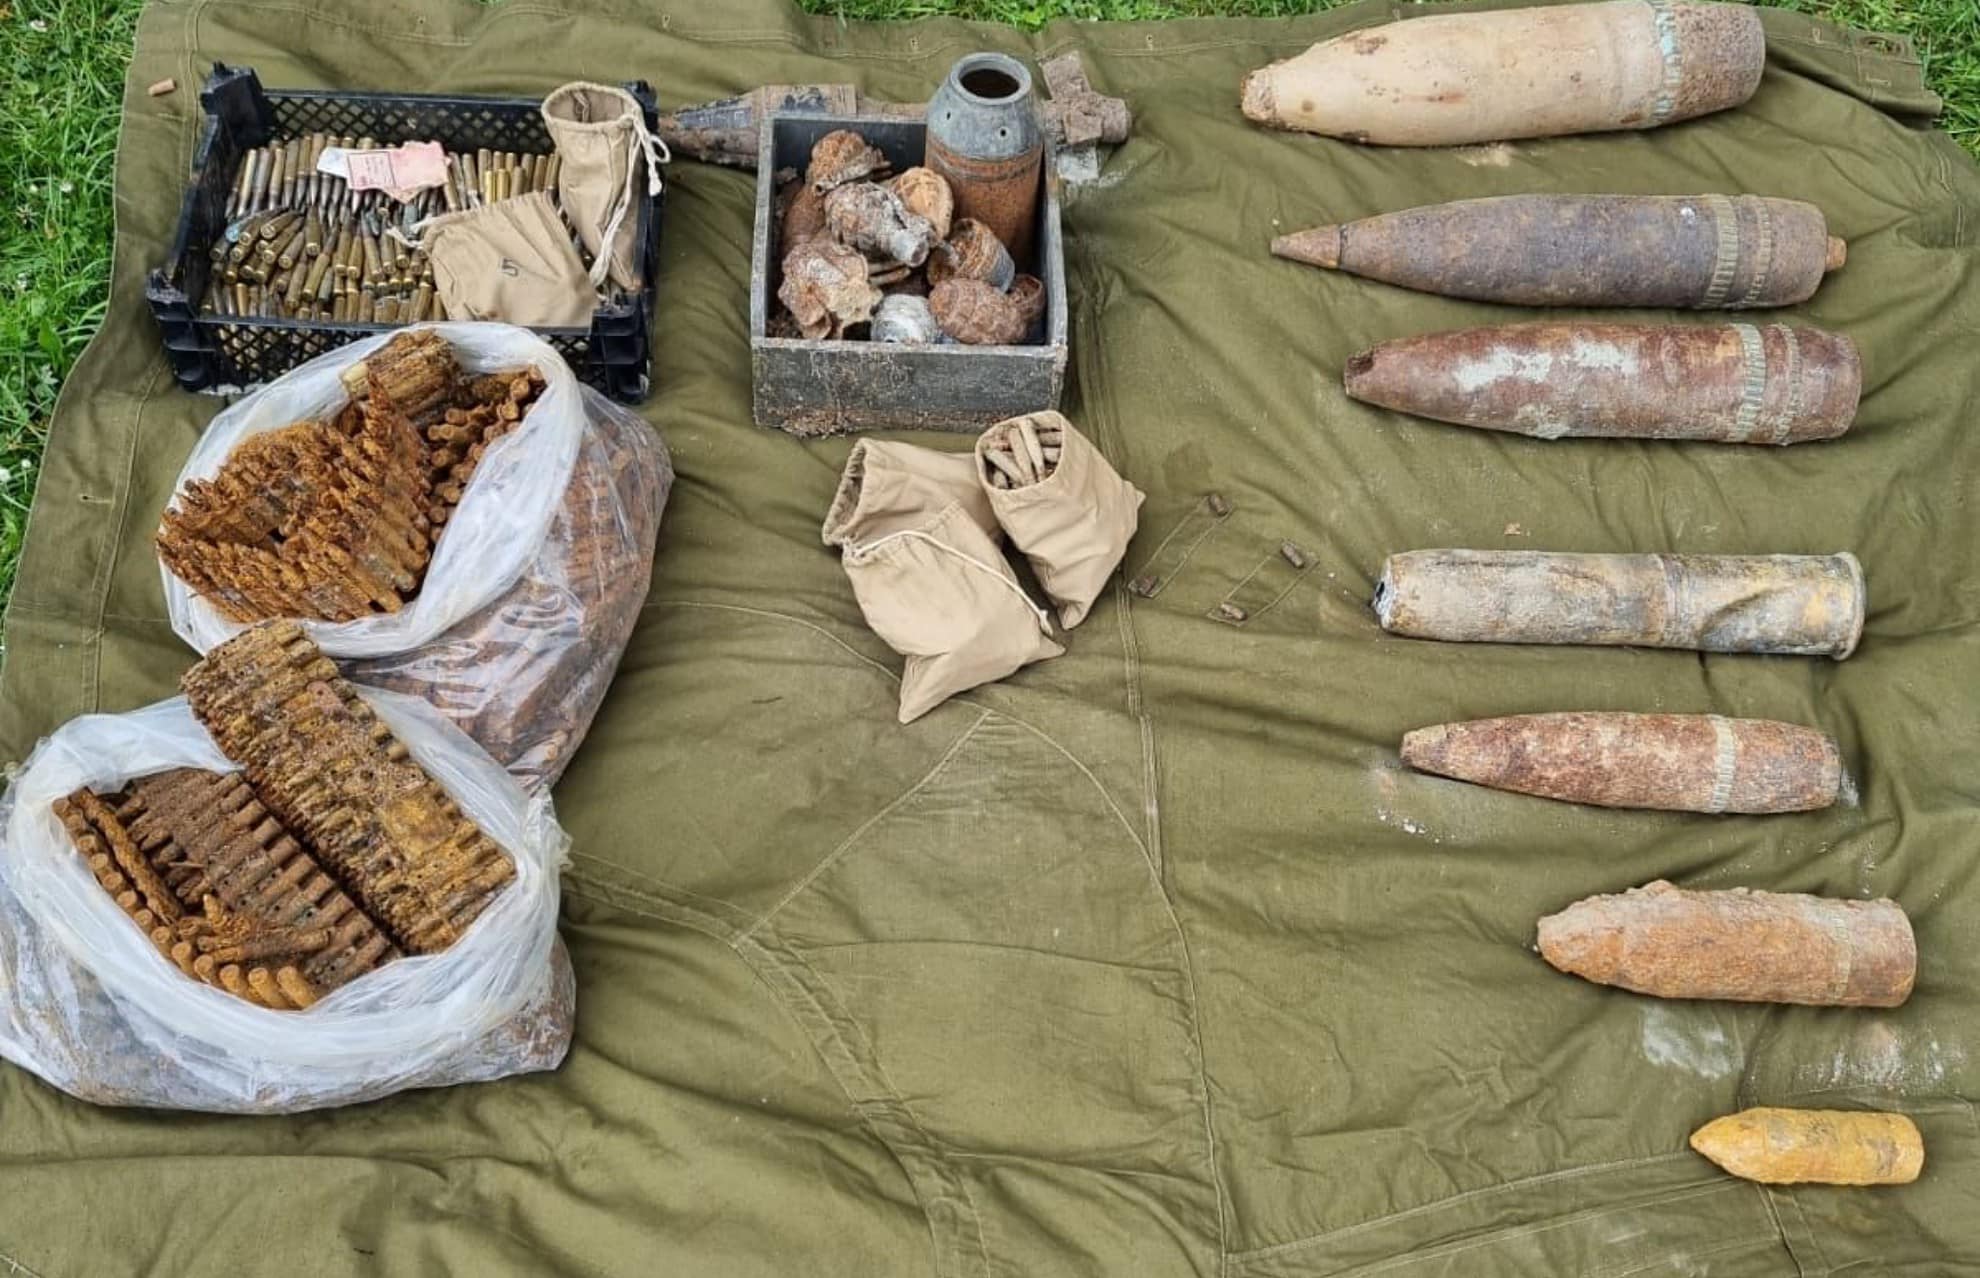 foto: proiectile, grenade și cartușe distruse de echipa pirotehnică în poligonul din gușterița